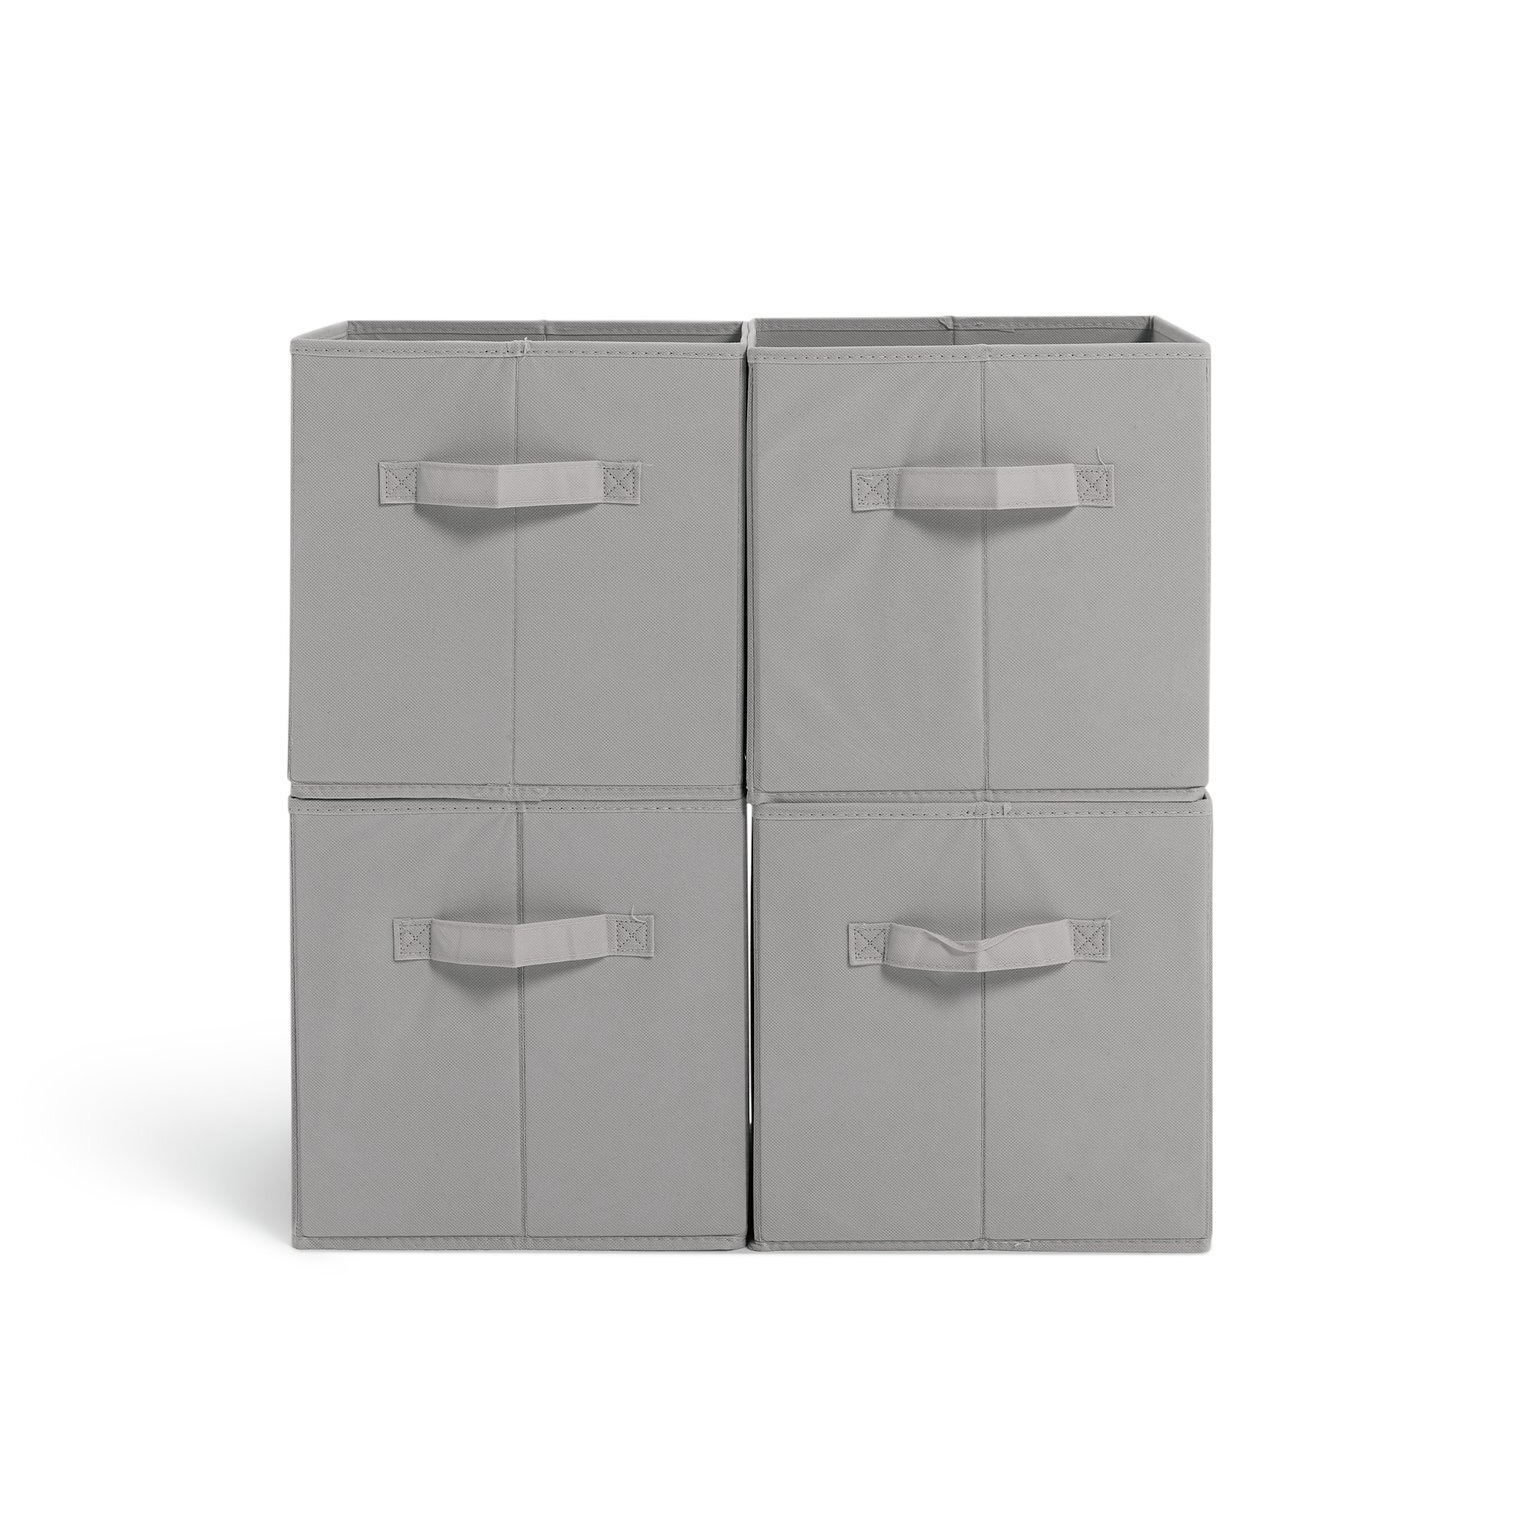 Habitat Set of 4 Grey Storage Boxes - image 1